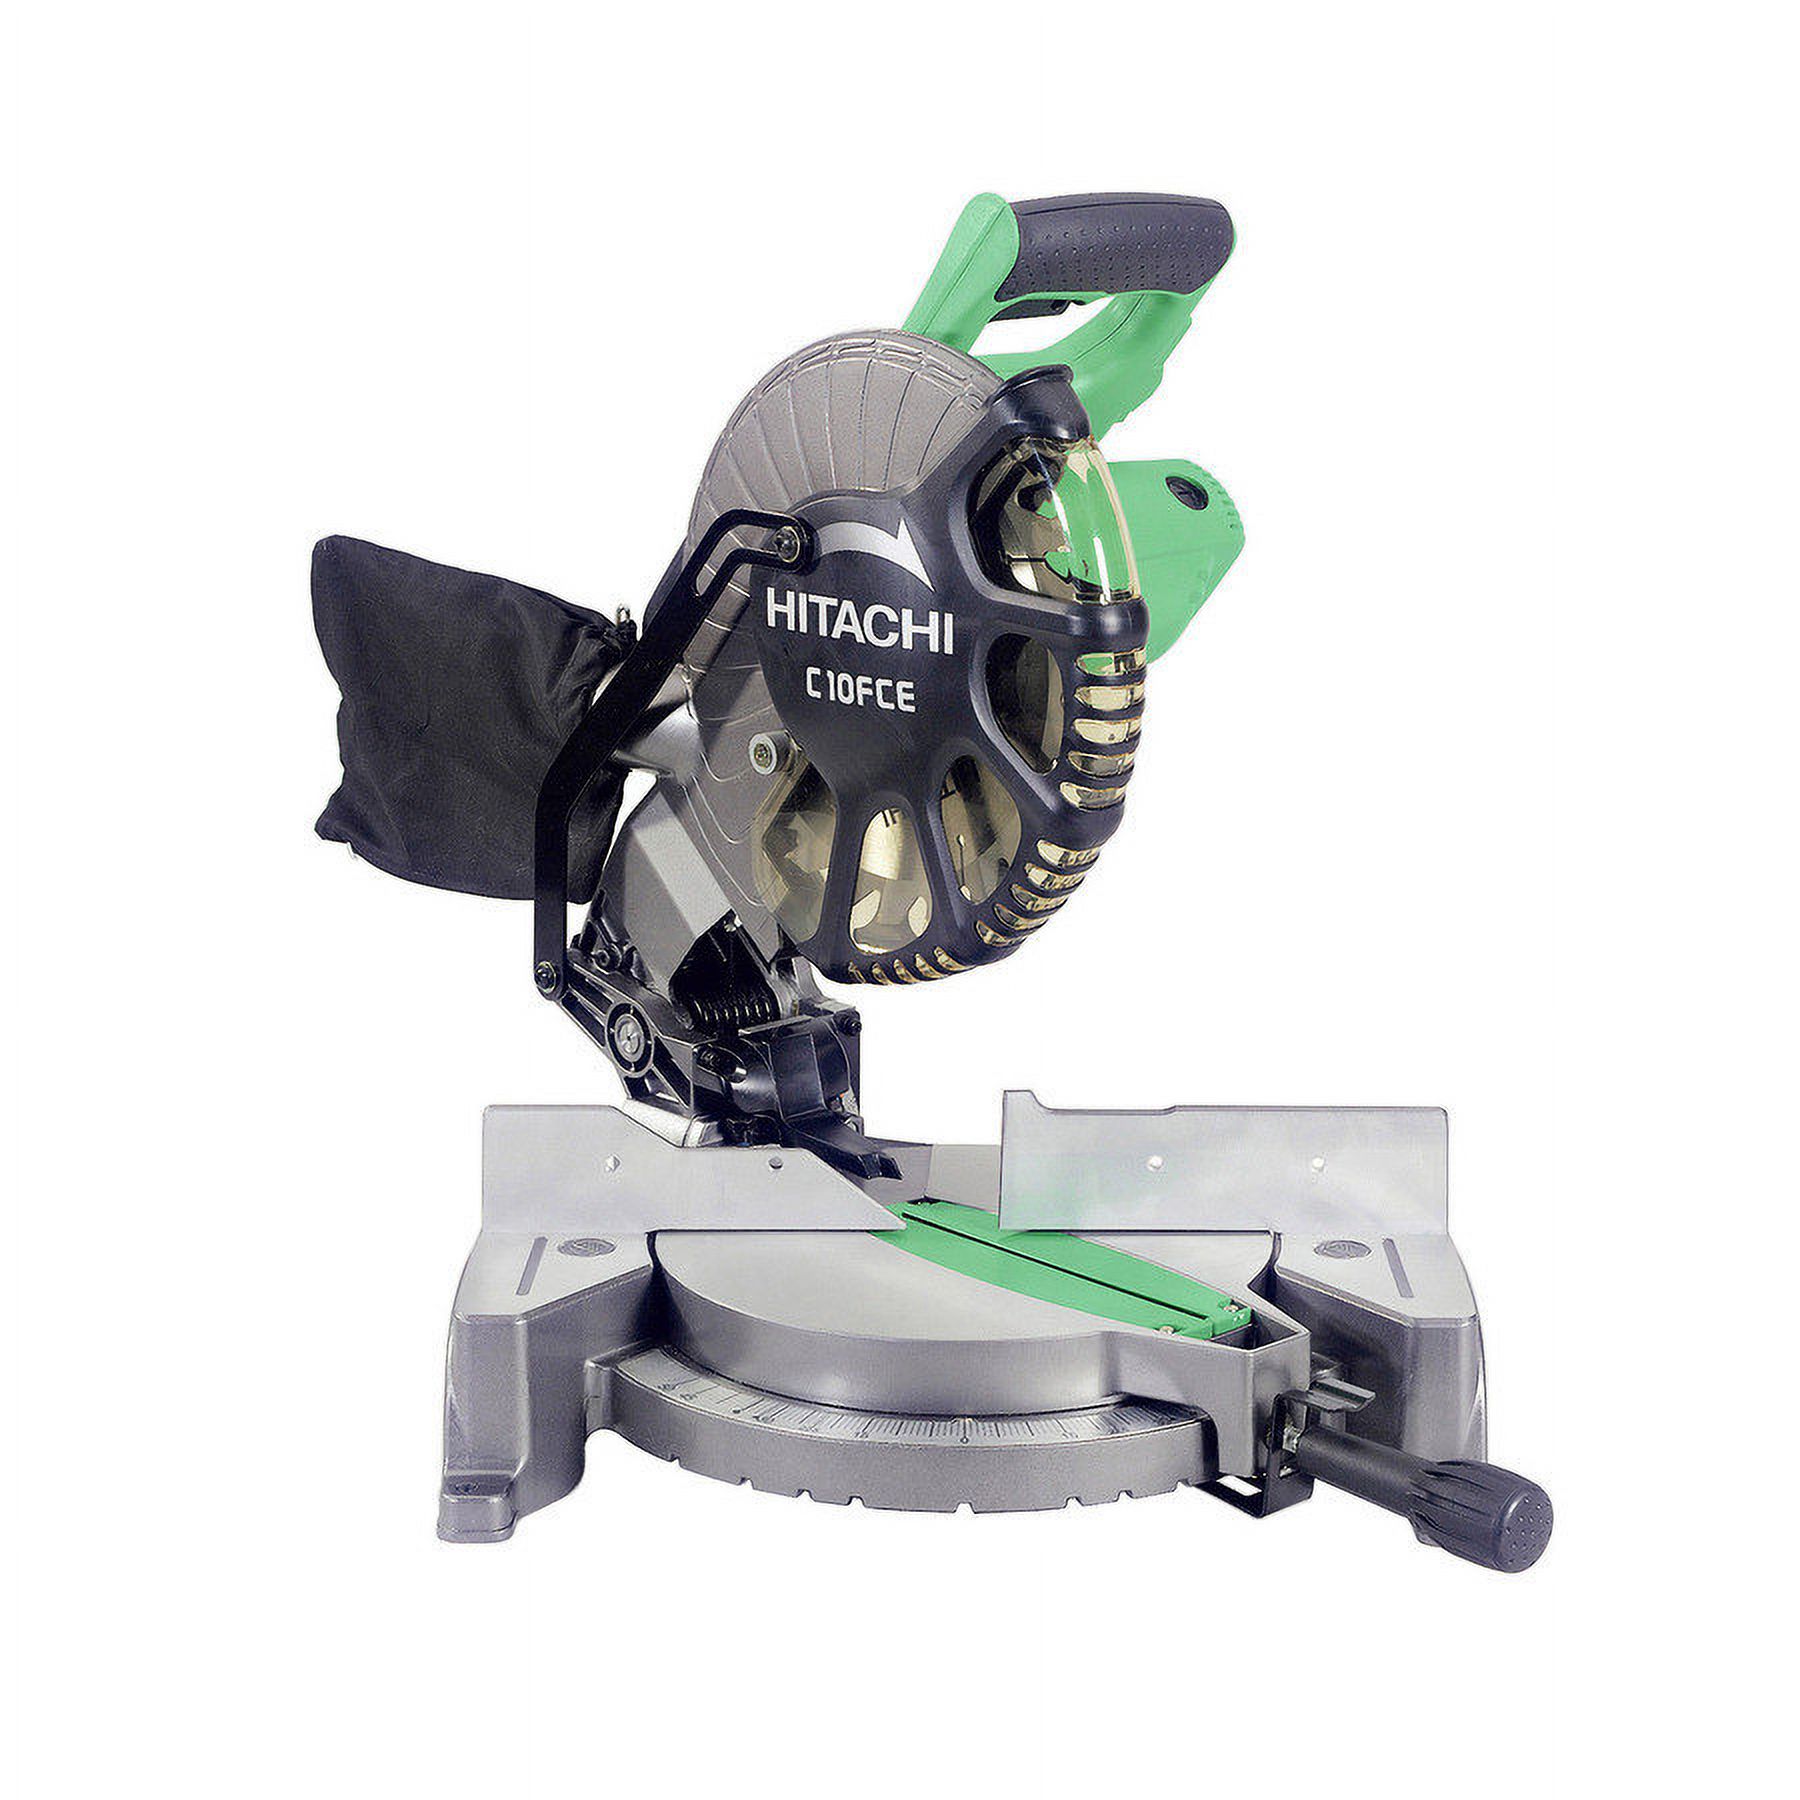 Hitachi C10FCE2 Compound Corded Miter Saw, 120 VAC, 15 A, 10 in Dia, 5000 rpm - image 3 of 5